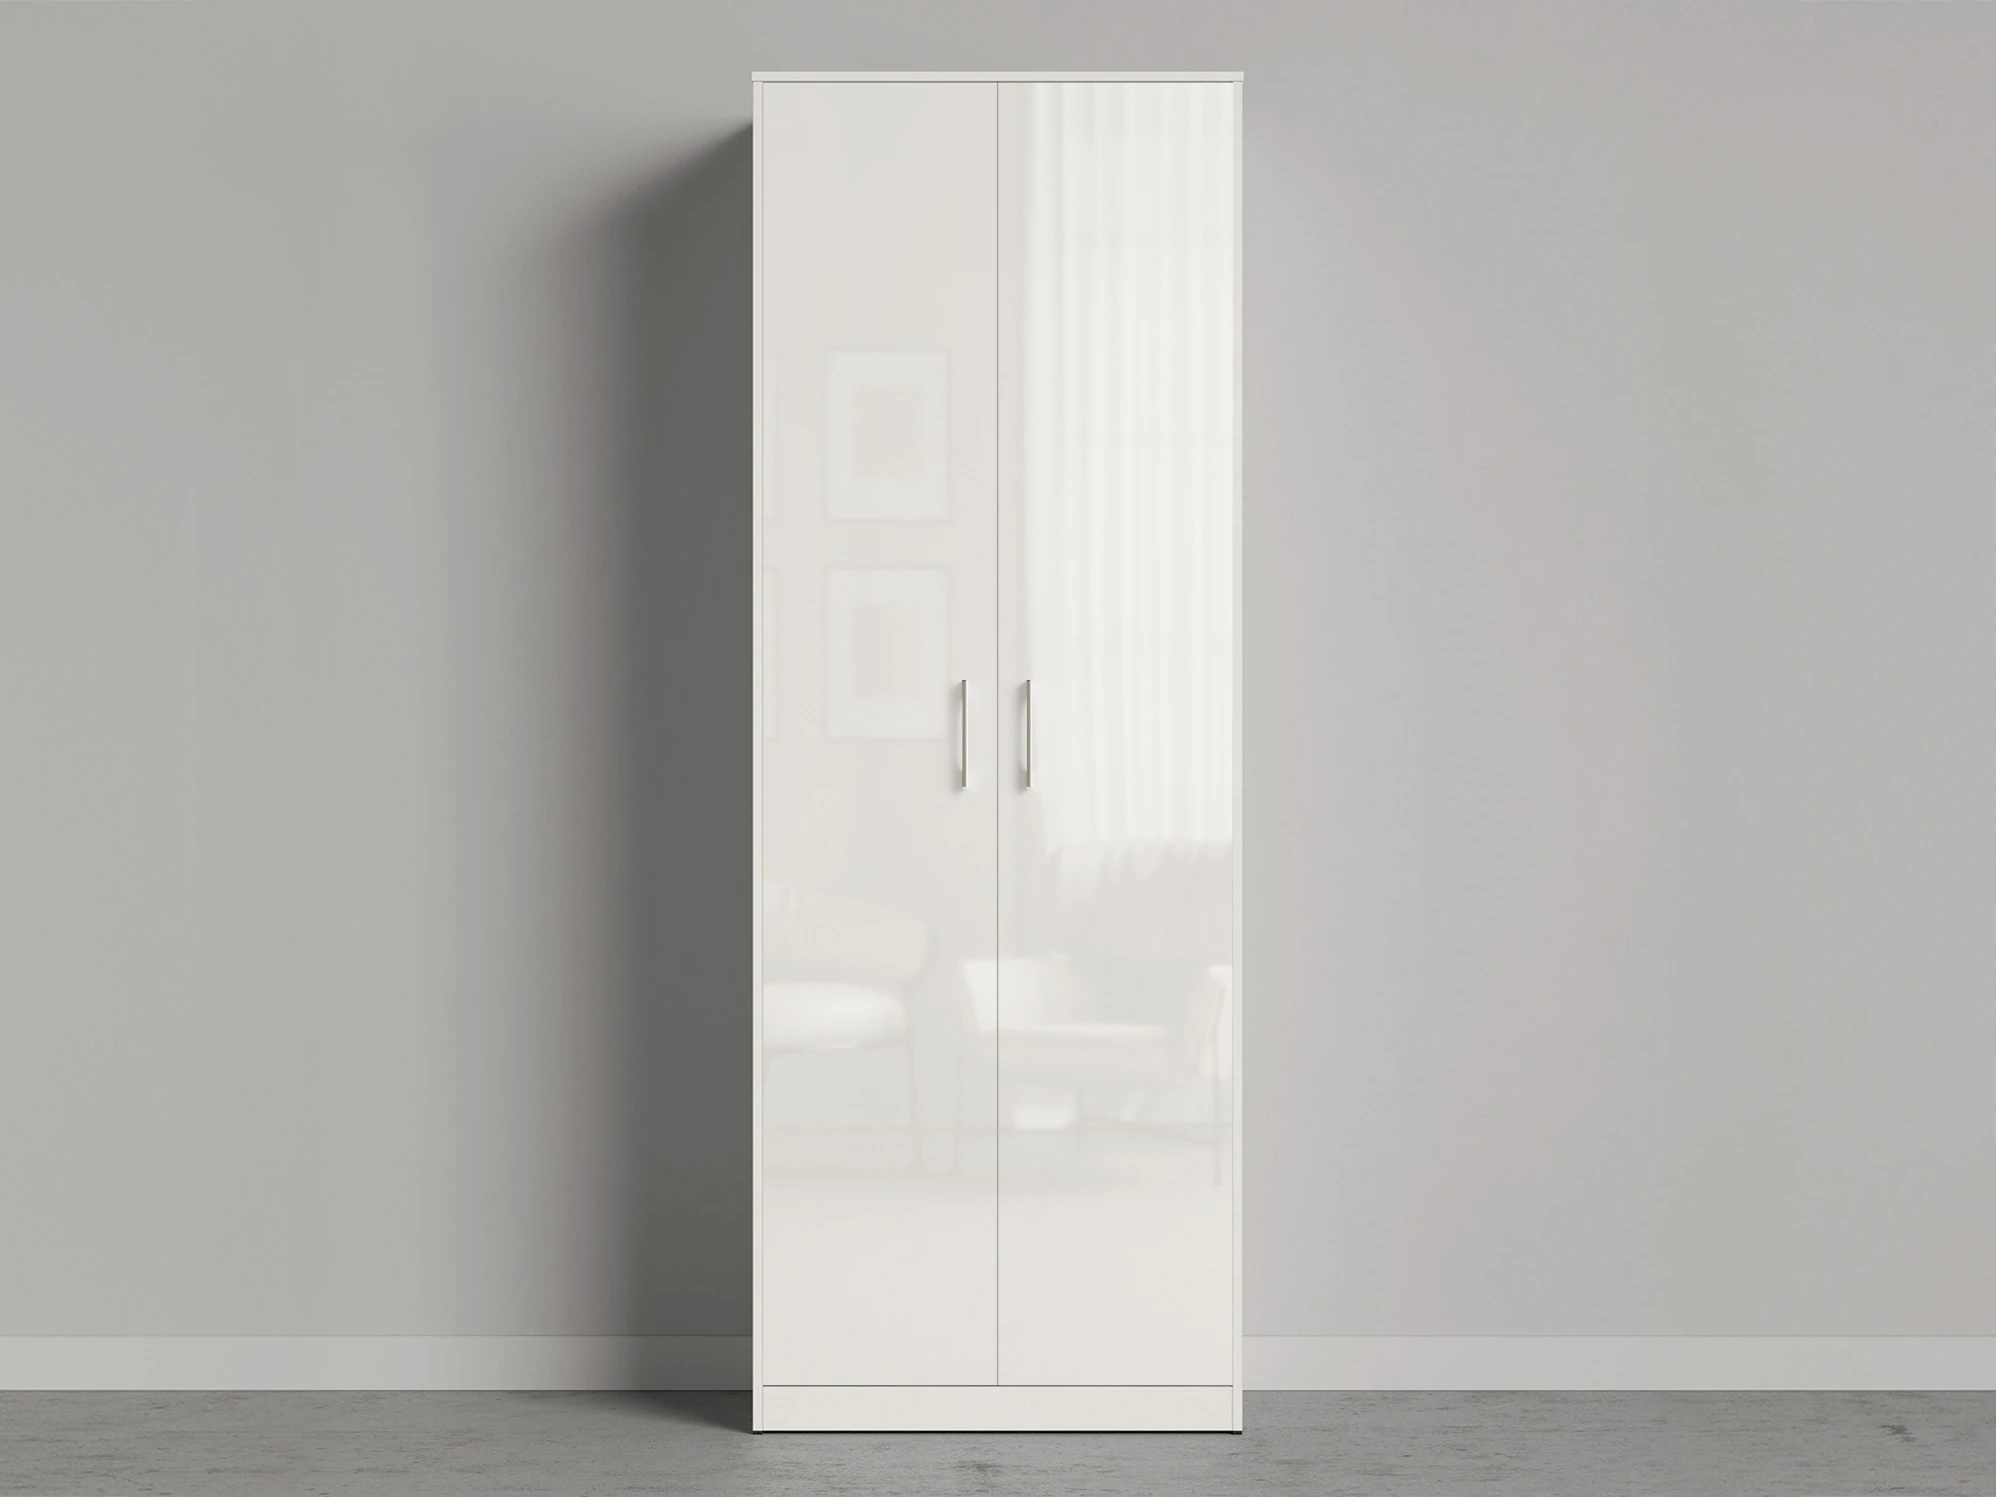 1 Cabinet 80 cm (Standard 45 cm depth) White / White Gloss